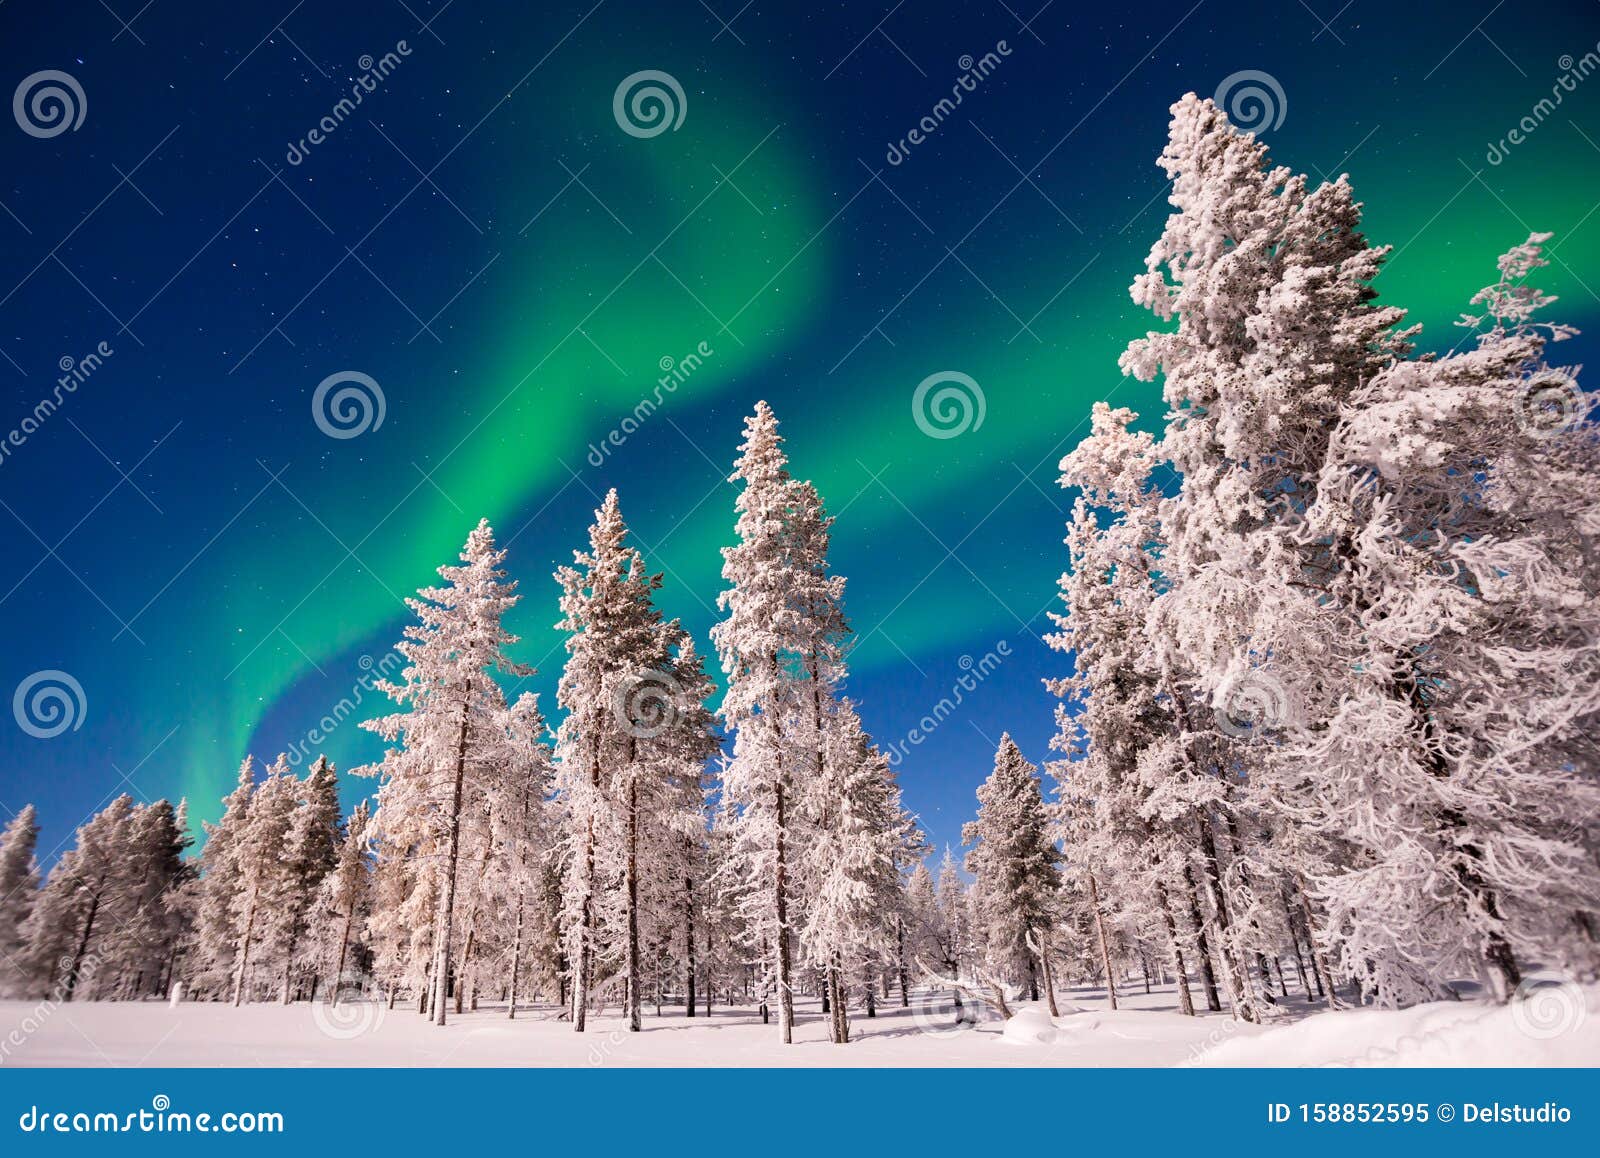 northern lights, aurora borealis in lapland finland